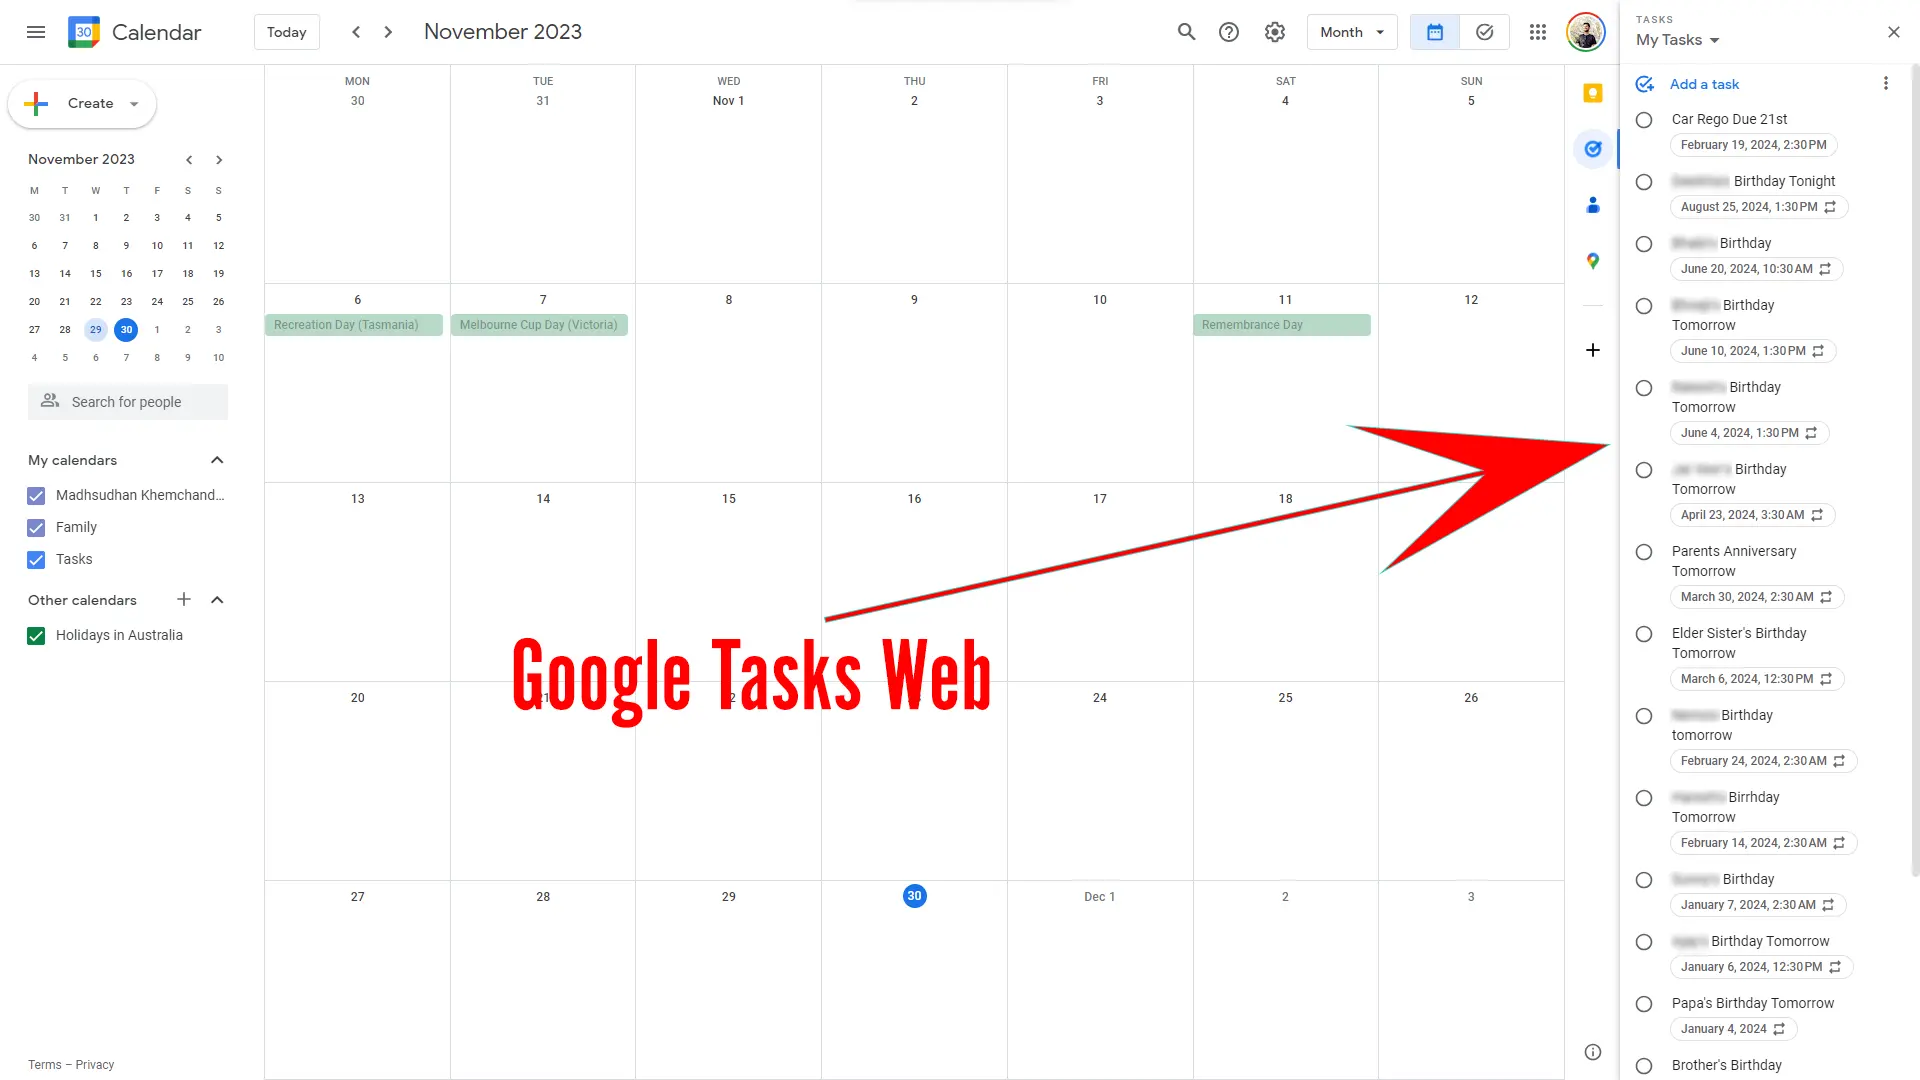 Google Tasks Web